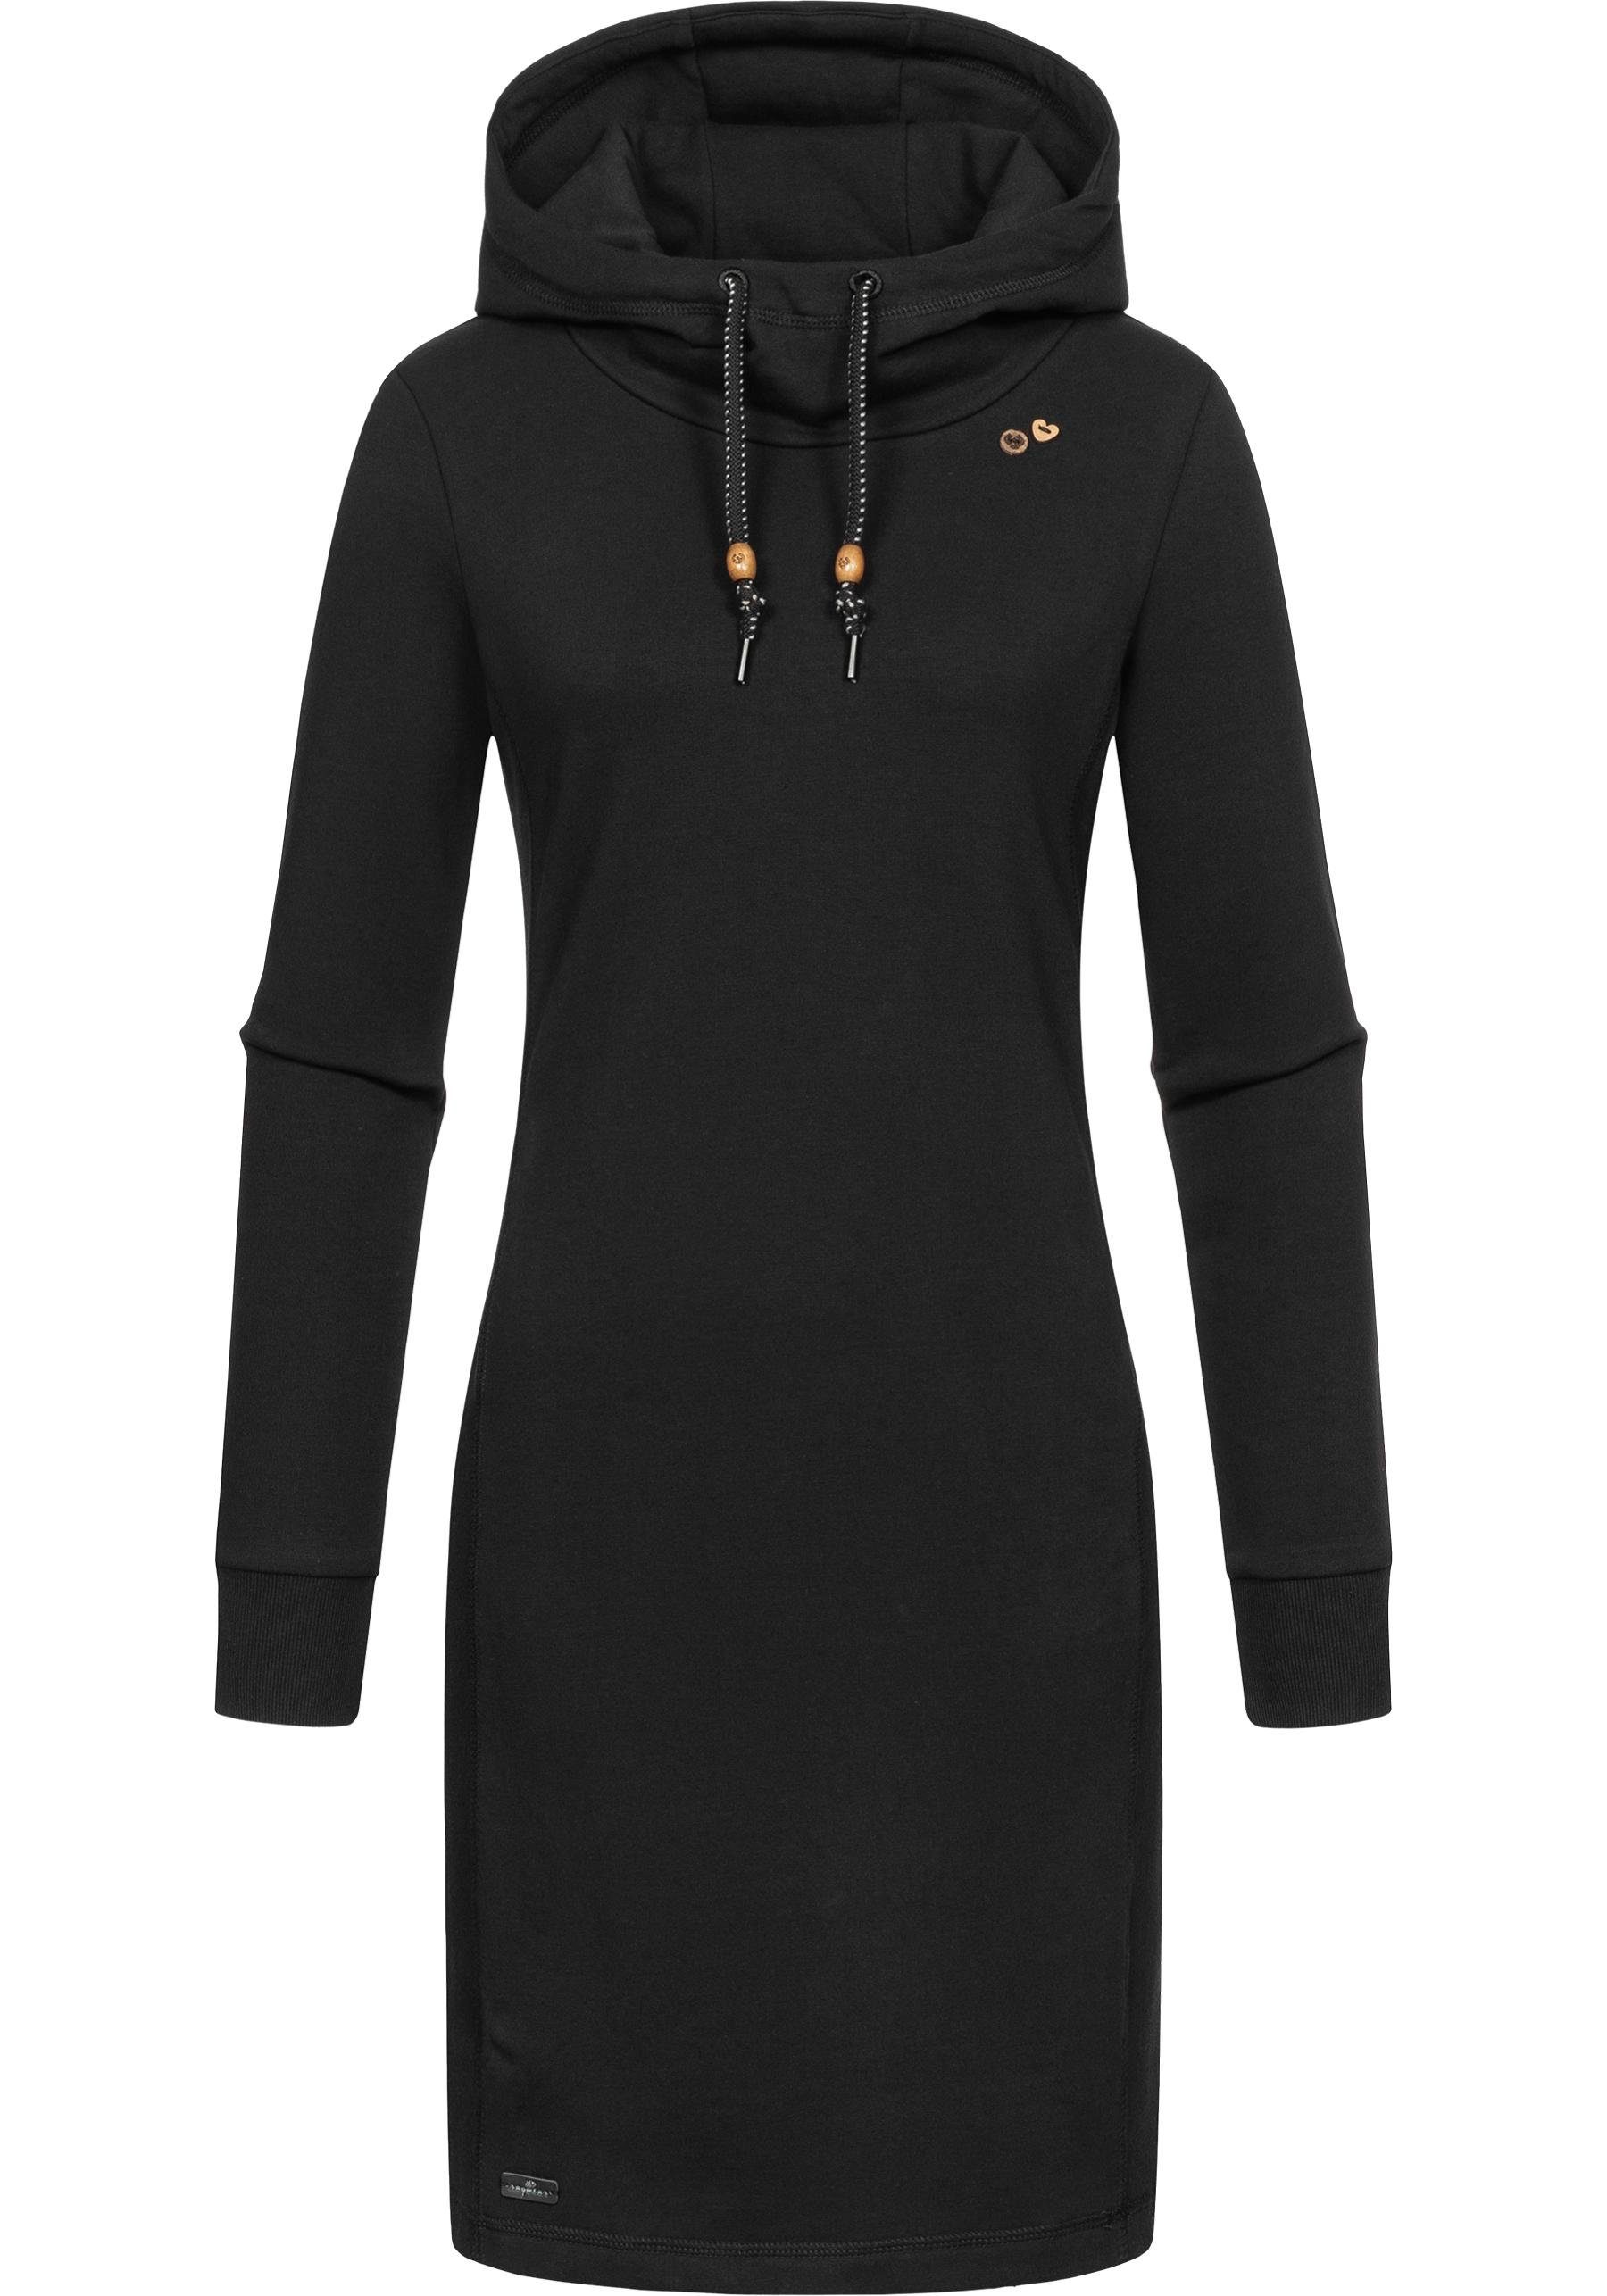 Ragwear Sweatkleid Sabreen Langärmliges Baumwoll Kleid mit Kapuze schwarz | Jerseykleider